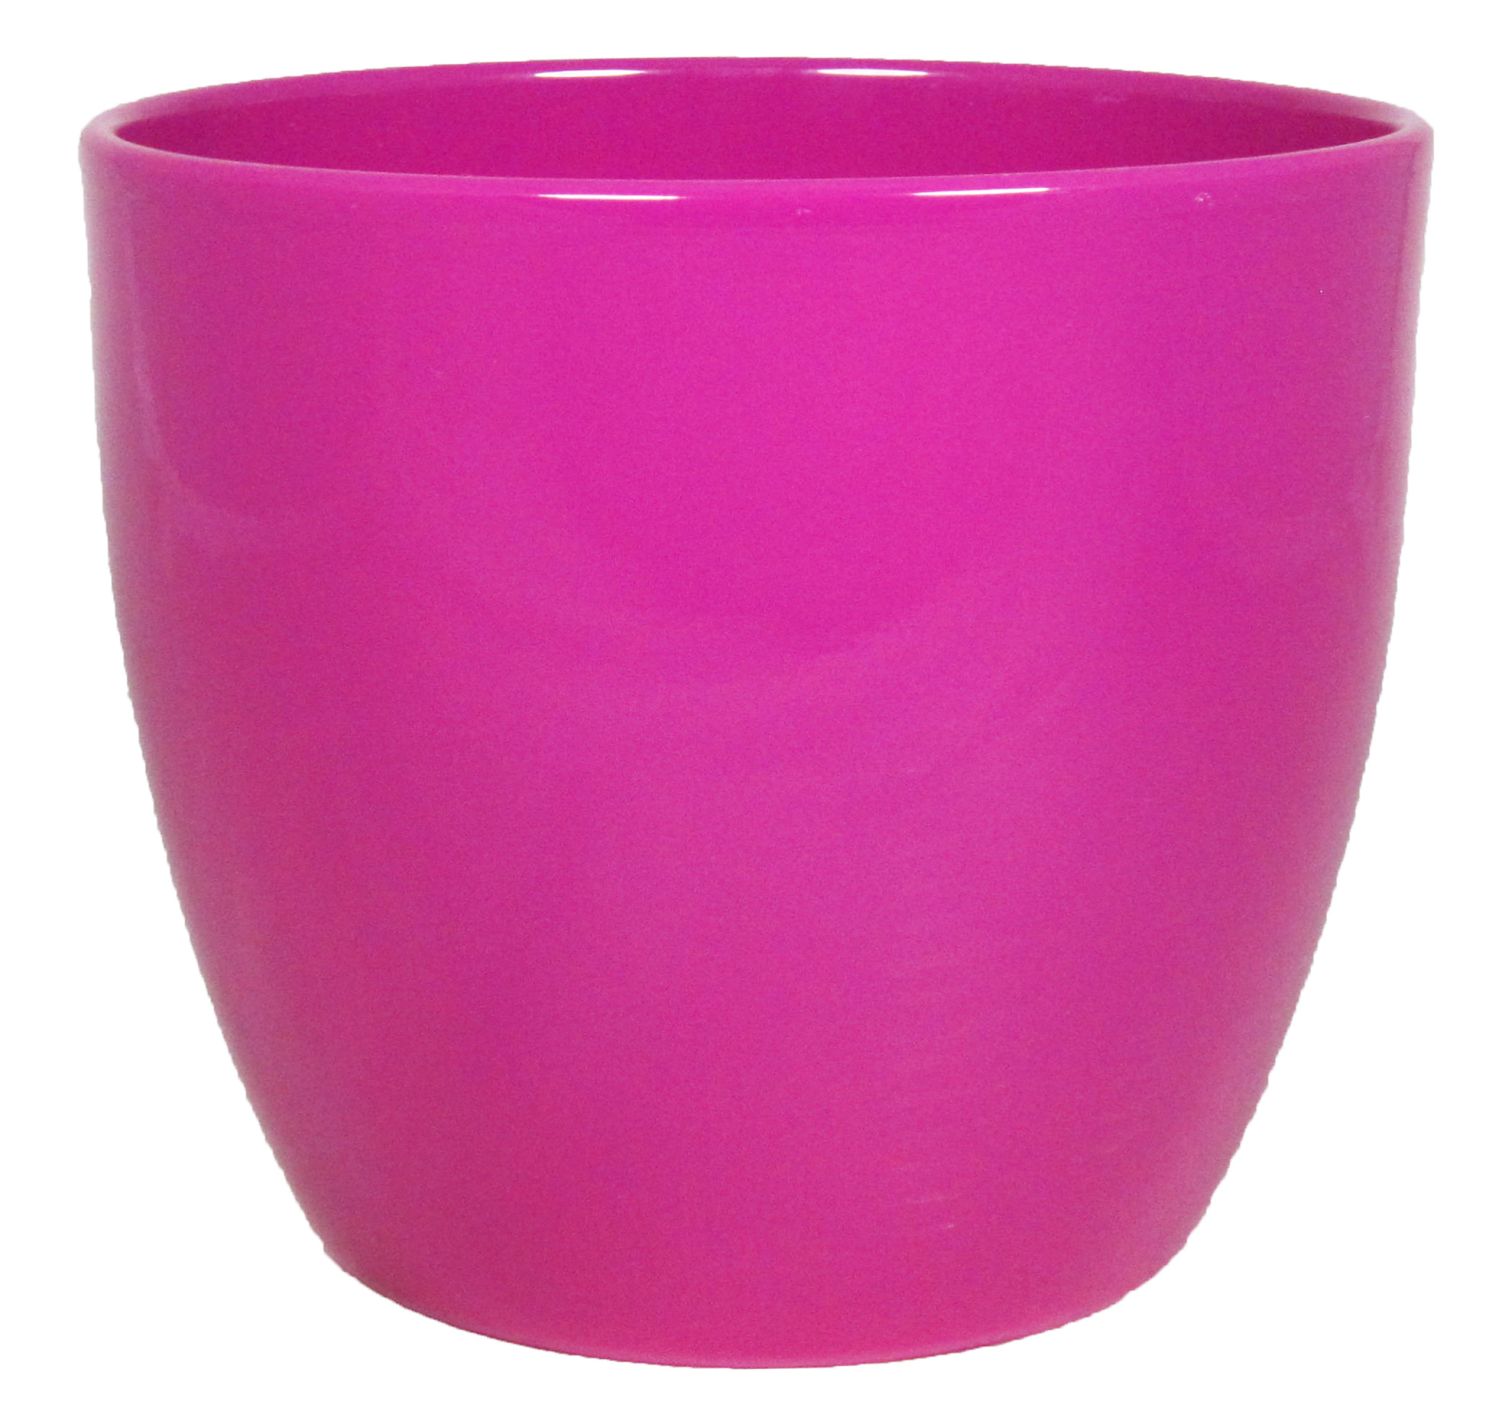 TEHERAN BASAR, Übertopf Keramik, 22,5cm, pink, Ø25cm